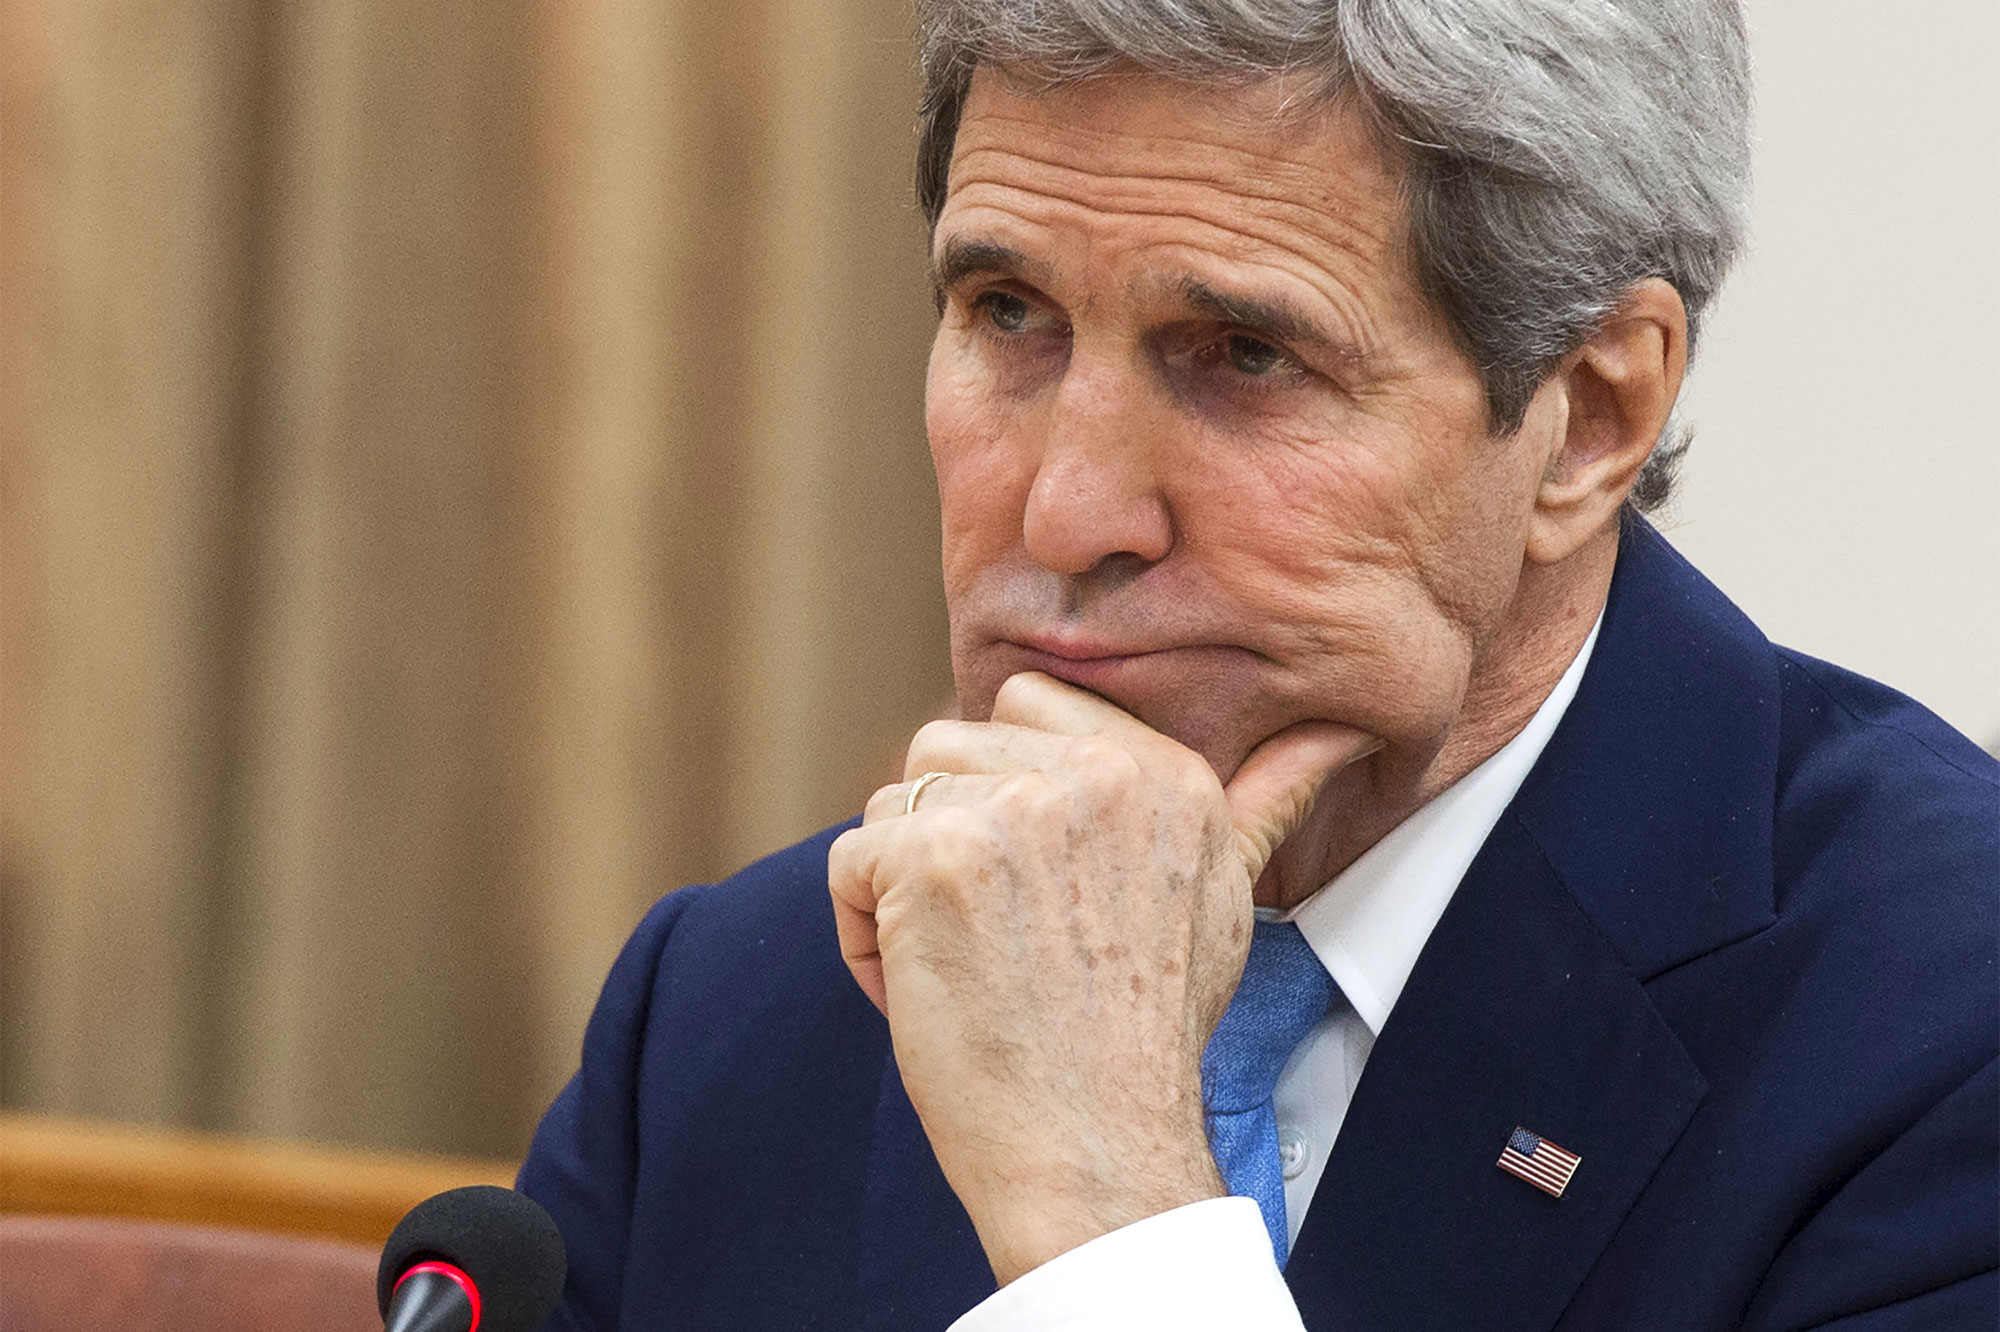 Ngoại trưởng Mỹ John Kerry đã không thể thuyết phục được giới chức Campuchia thay đổi lập trường về tình hình Biển Đông